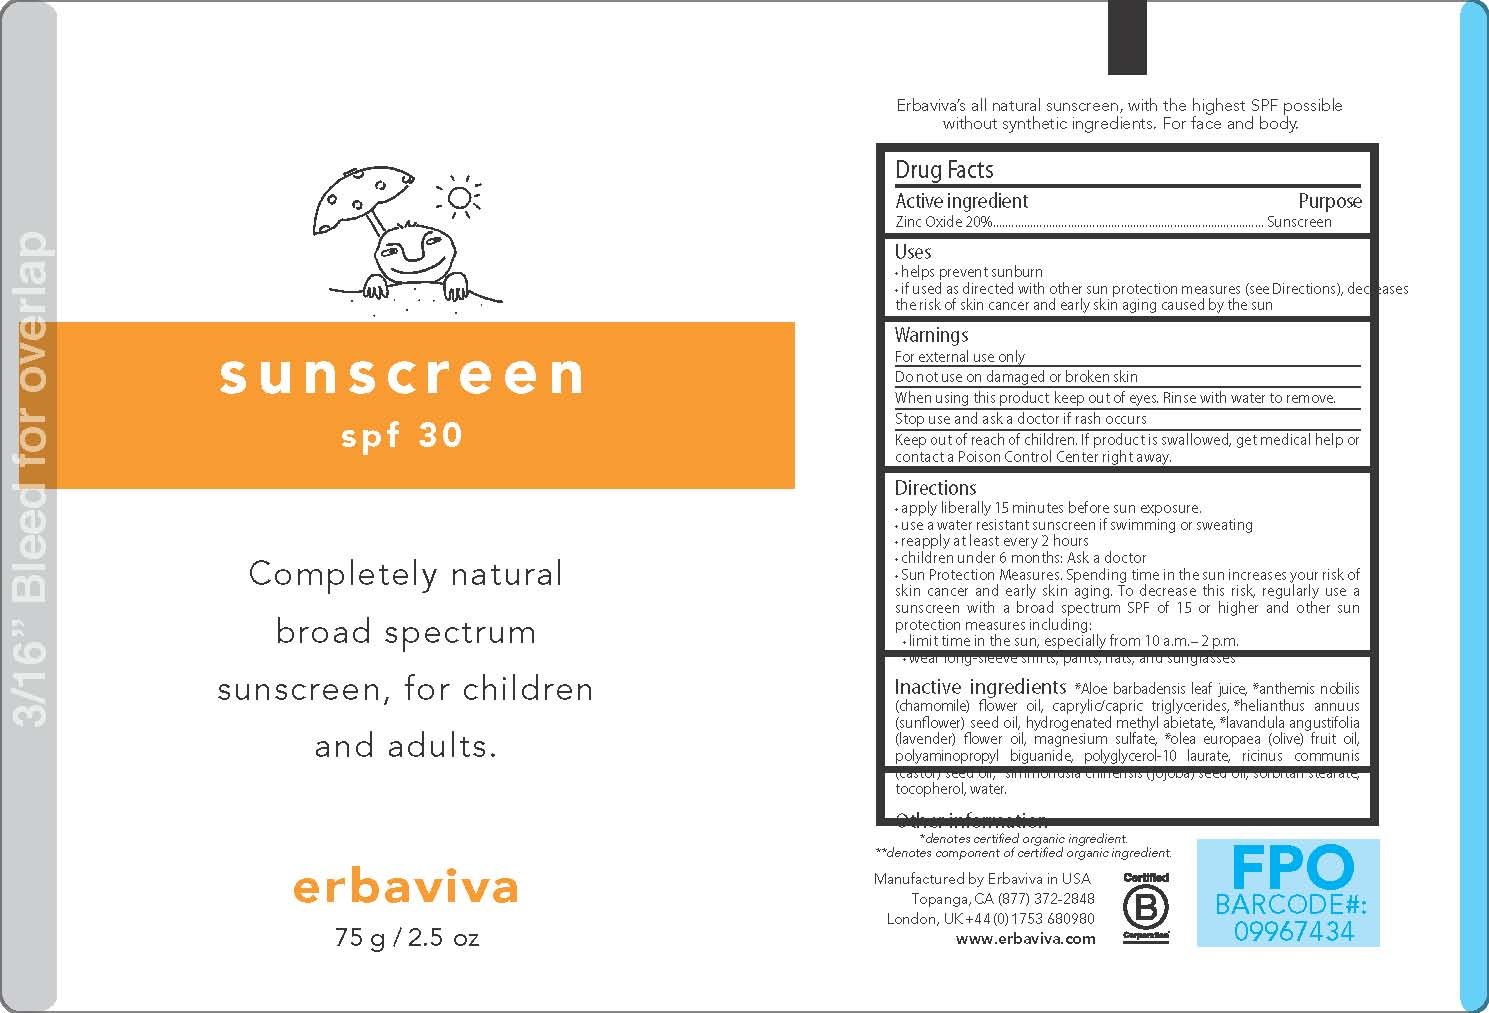 EBV_2ozTubes_Sunscreen_NewFDA_m2b